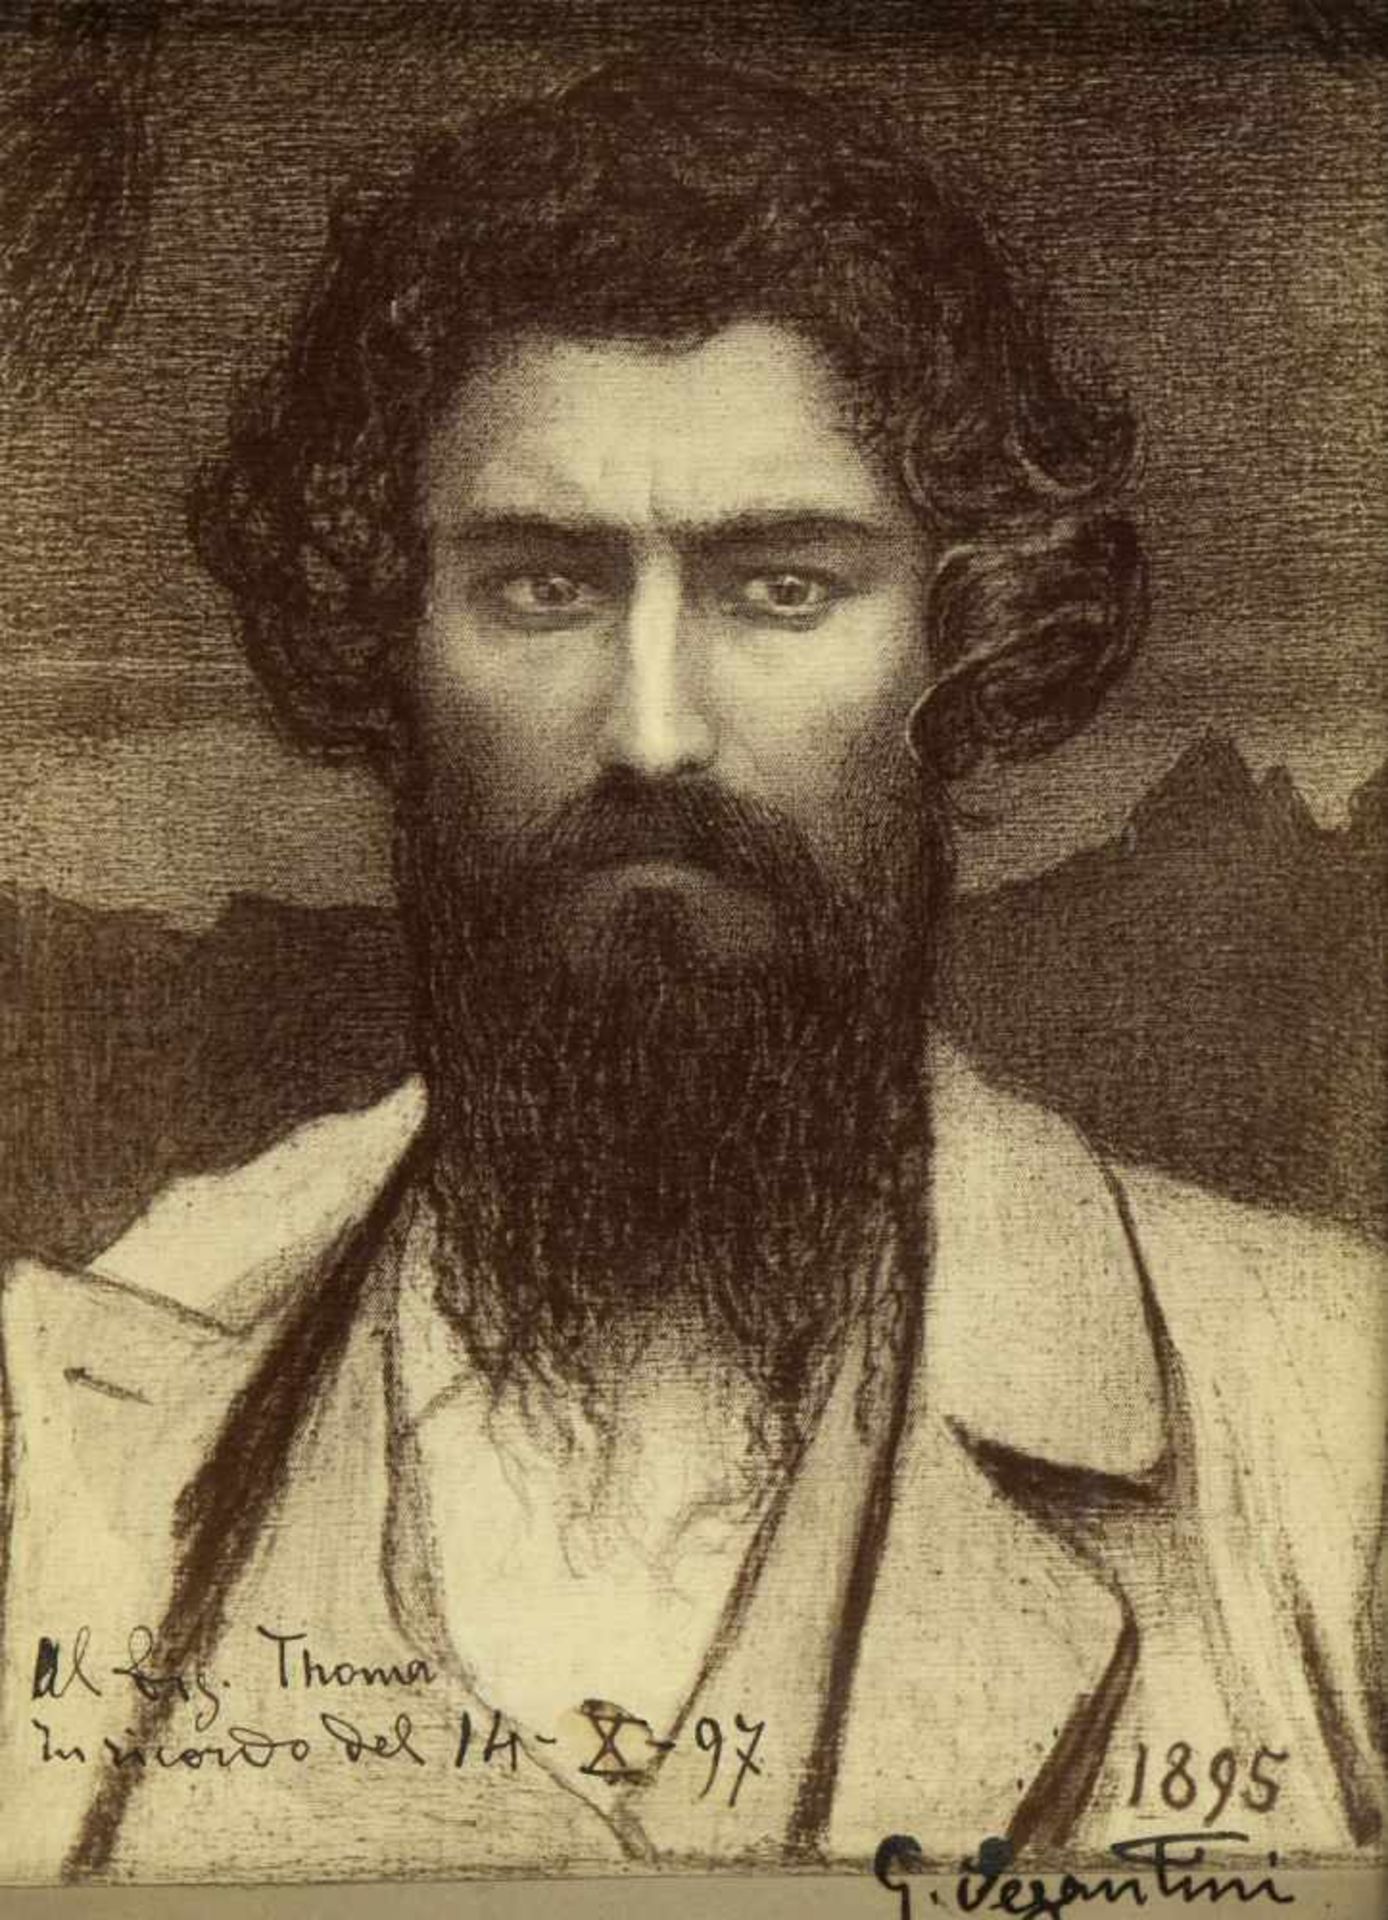 Segantini, Giovanni. 1858 Arco - Pontresina 1899Photographie eines gemalten Selbstportraits mit